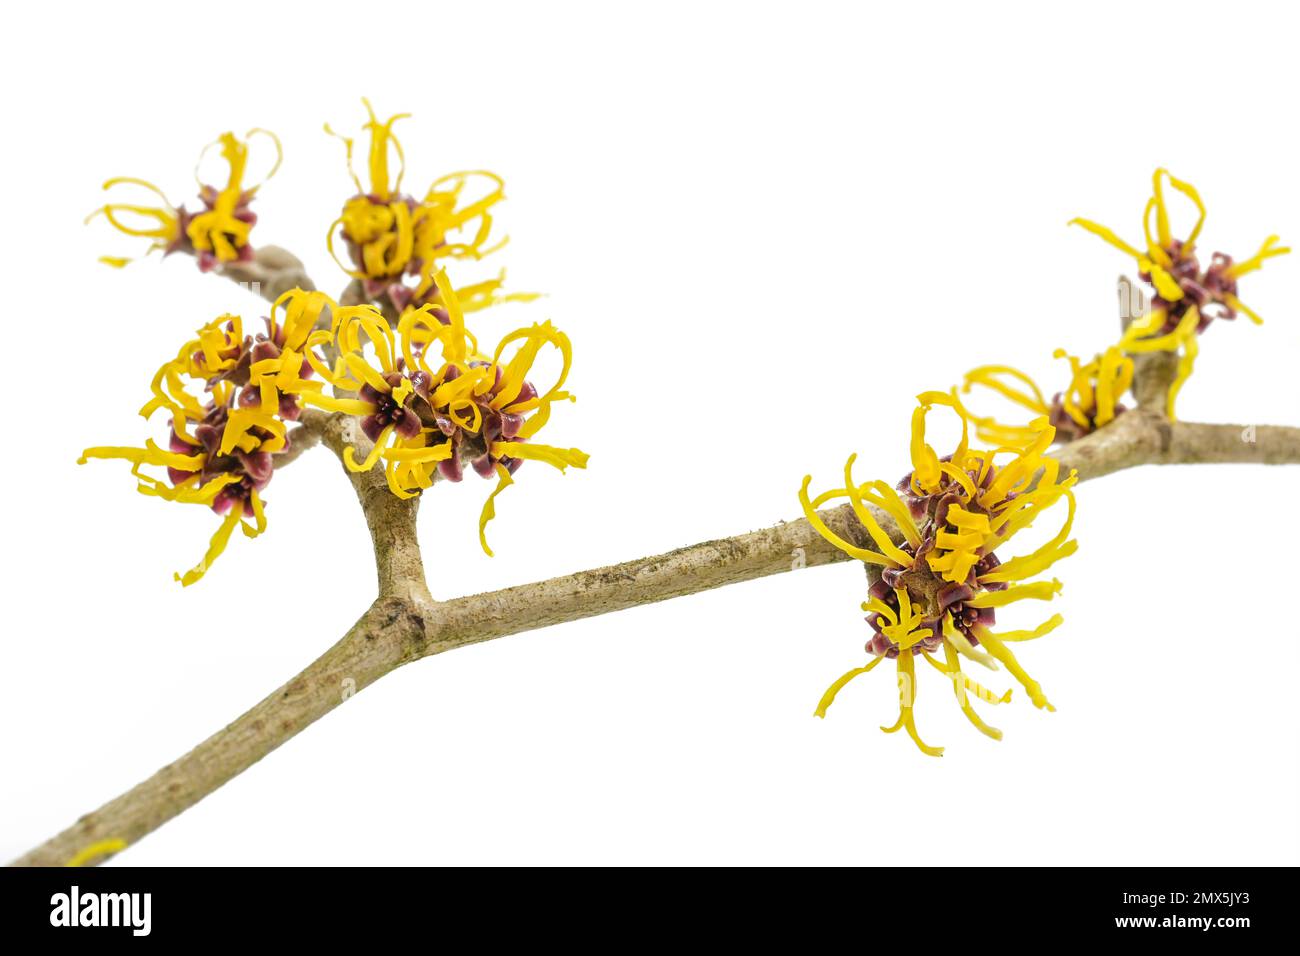 Fiori gialli su un ramo di strega fiorente (Hamamelis) isolato su sfondo bianco, pianta medicinale utilizzata per cosmetici per la cura della pelle, spazio copia, Foto Stock